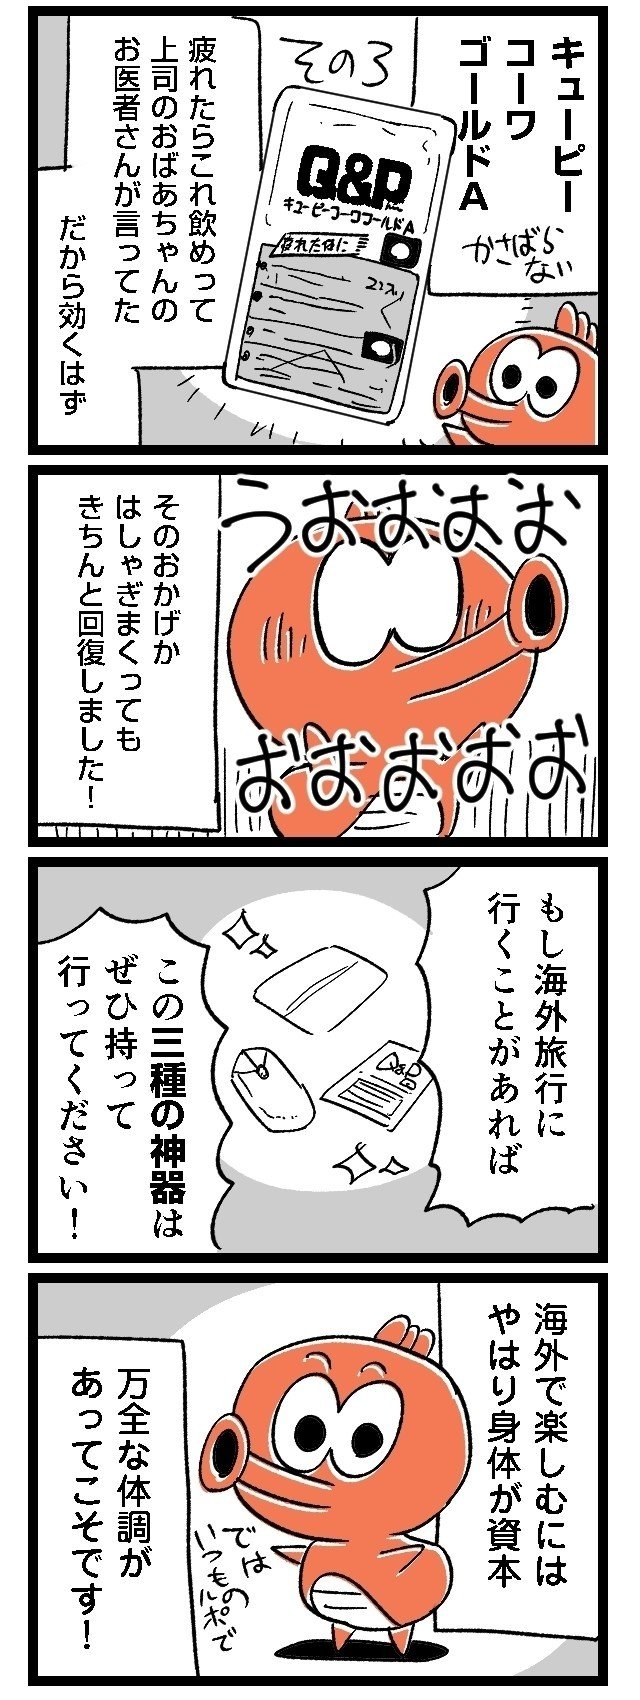 03ルポ漫画旅行_006